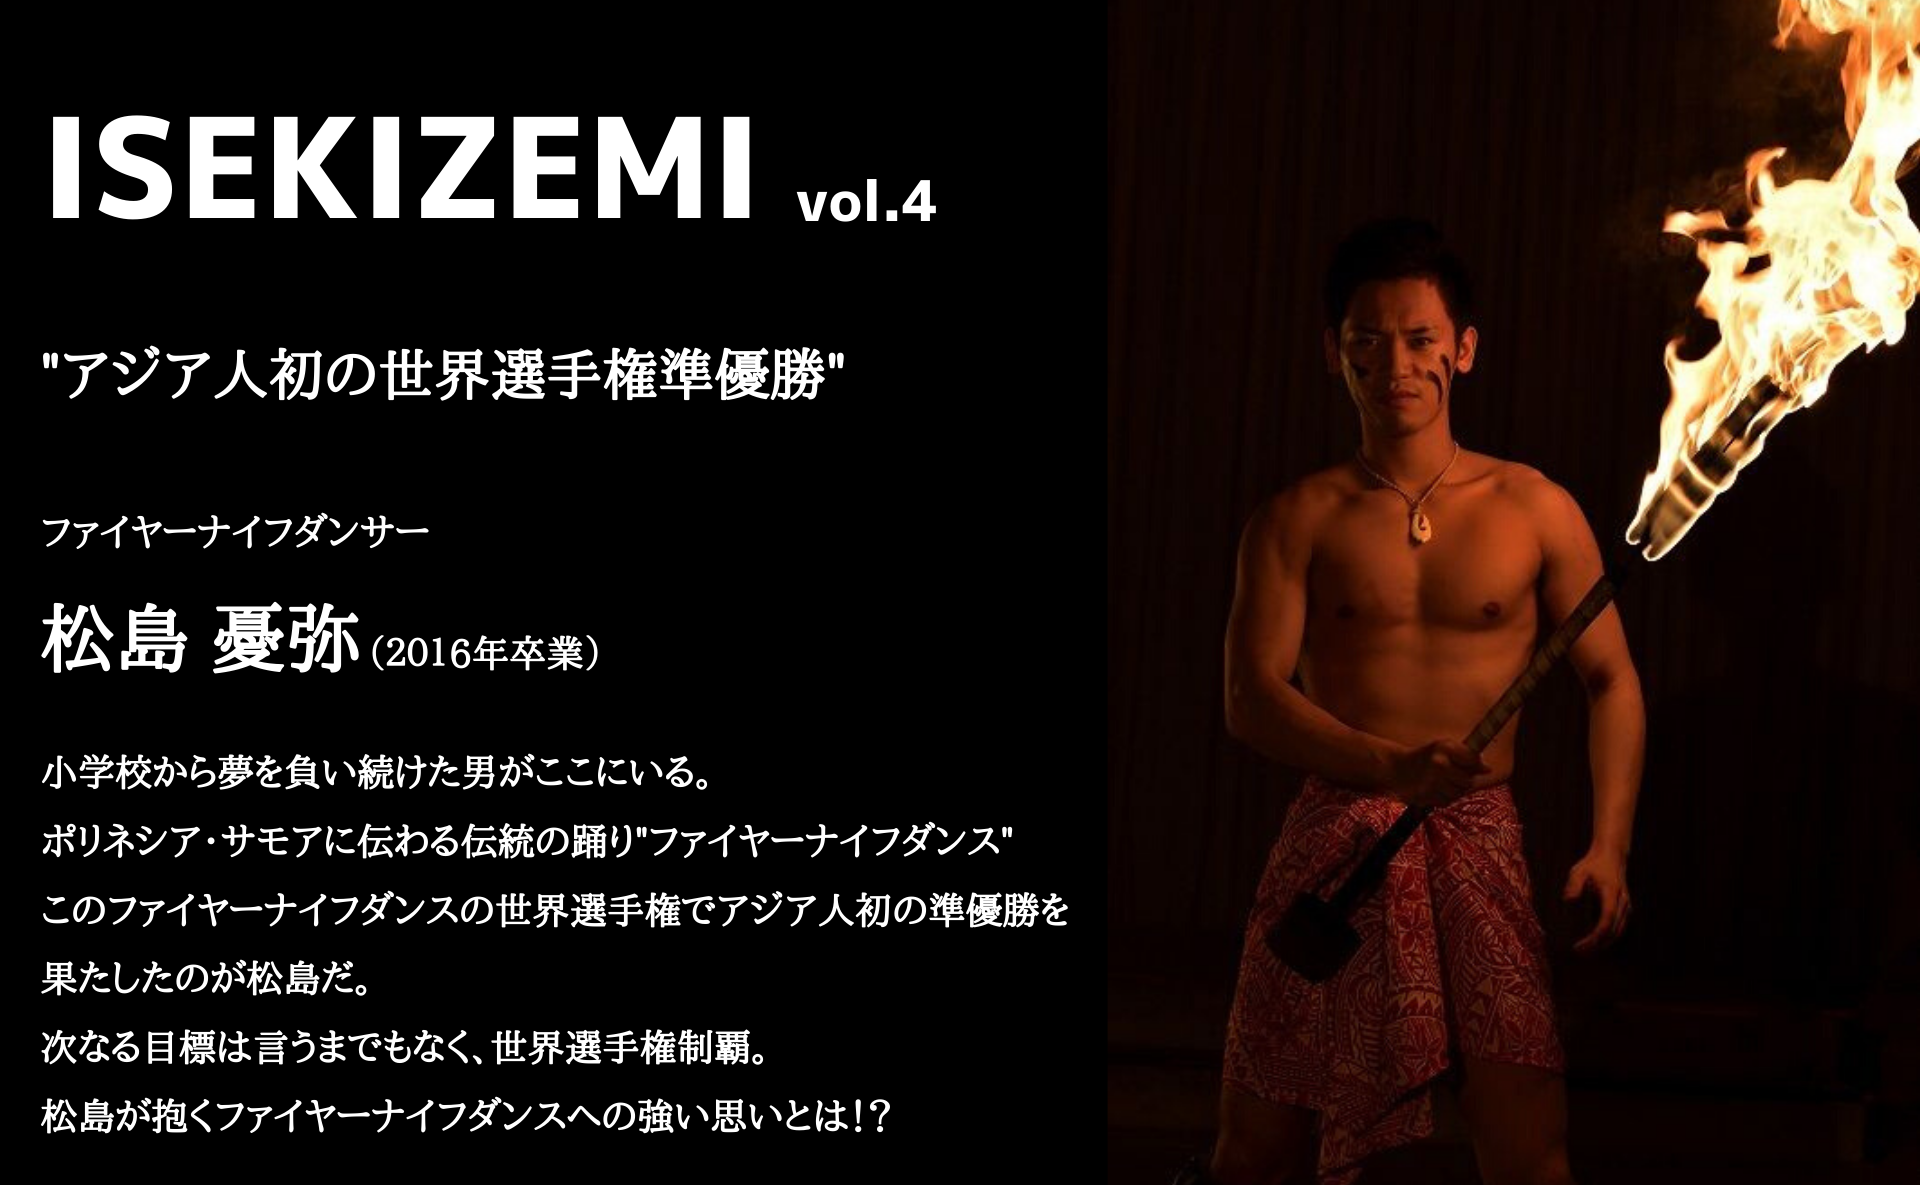 Isekizemi Vol 4 ファイヤーナイフダンス世界選手権で2位入賞 松島 憂弥 16年卒業 Isekizemi